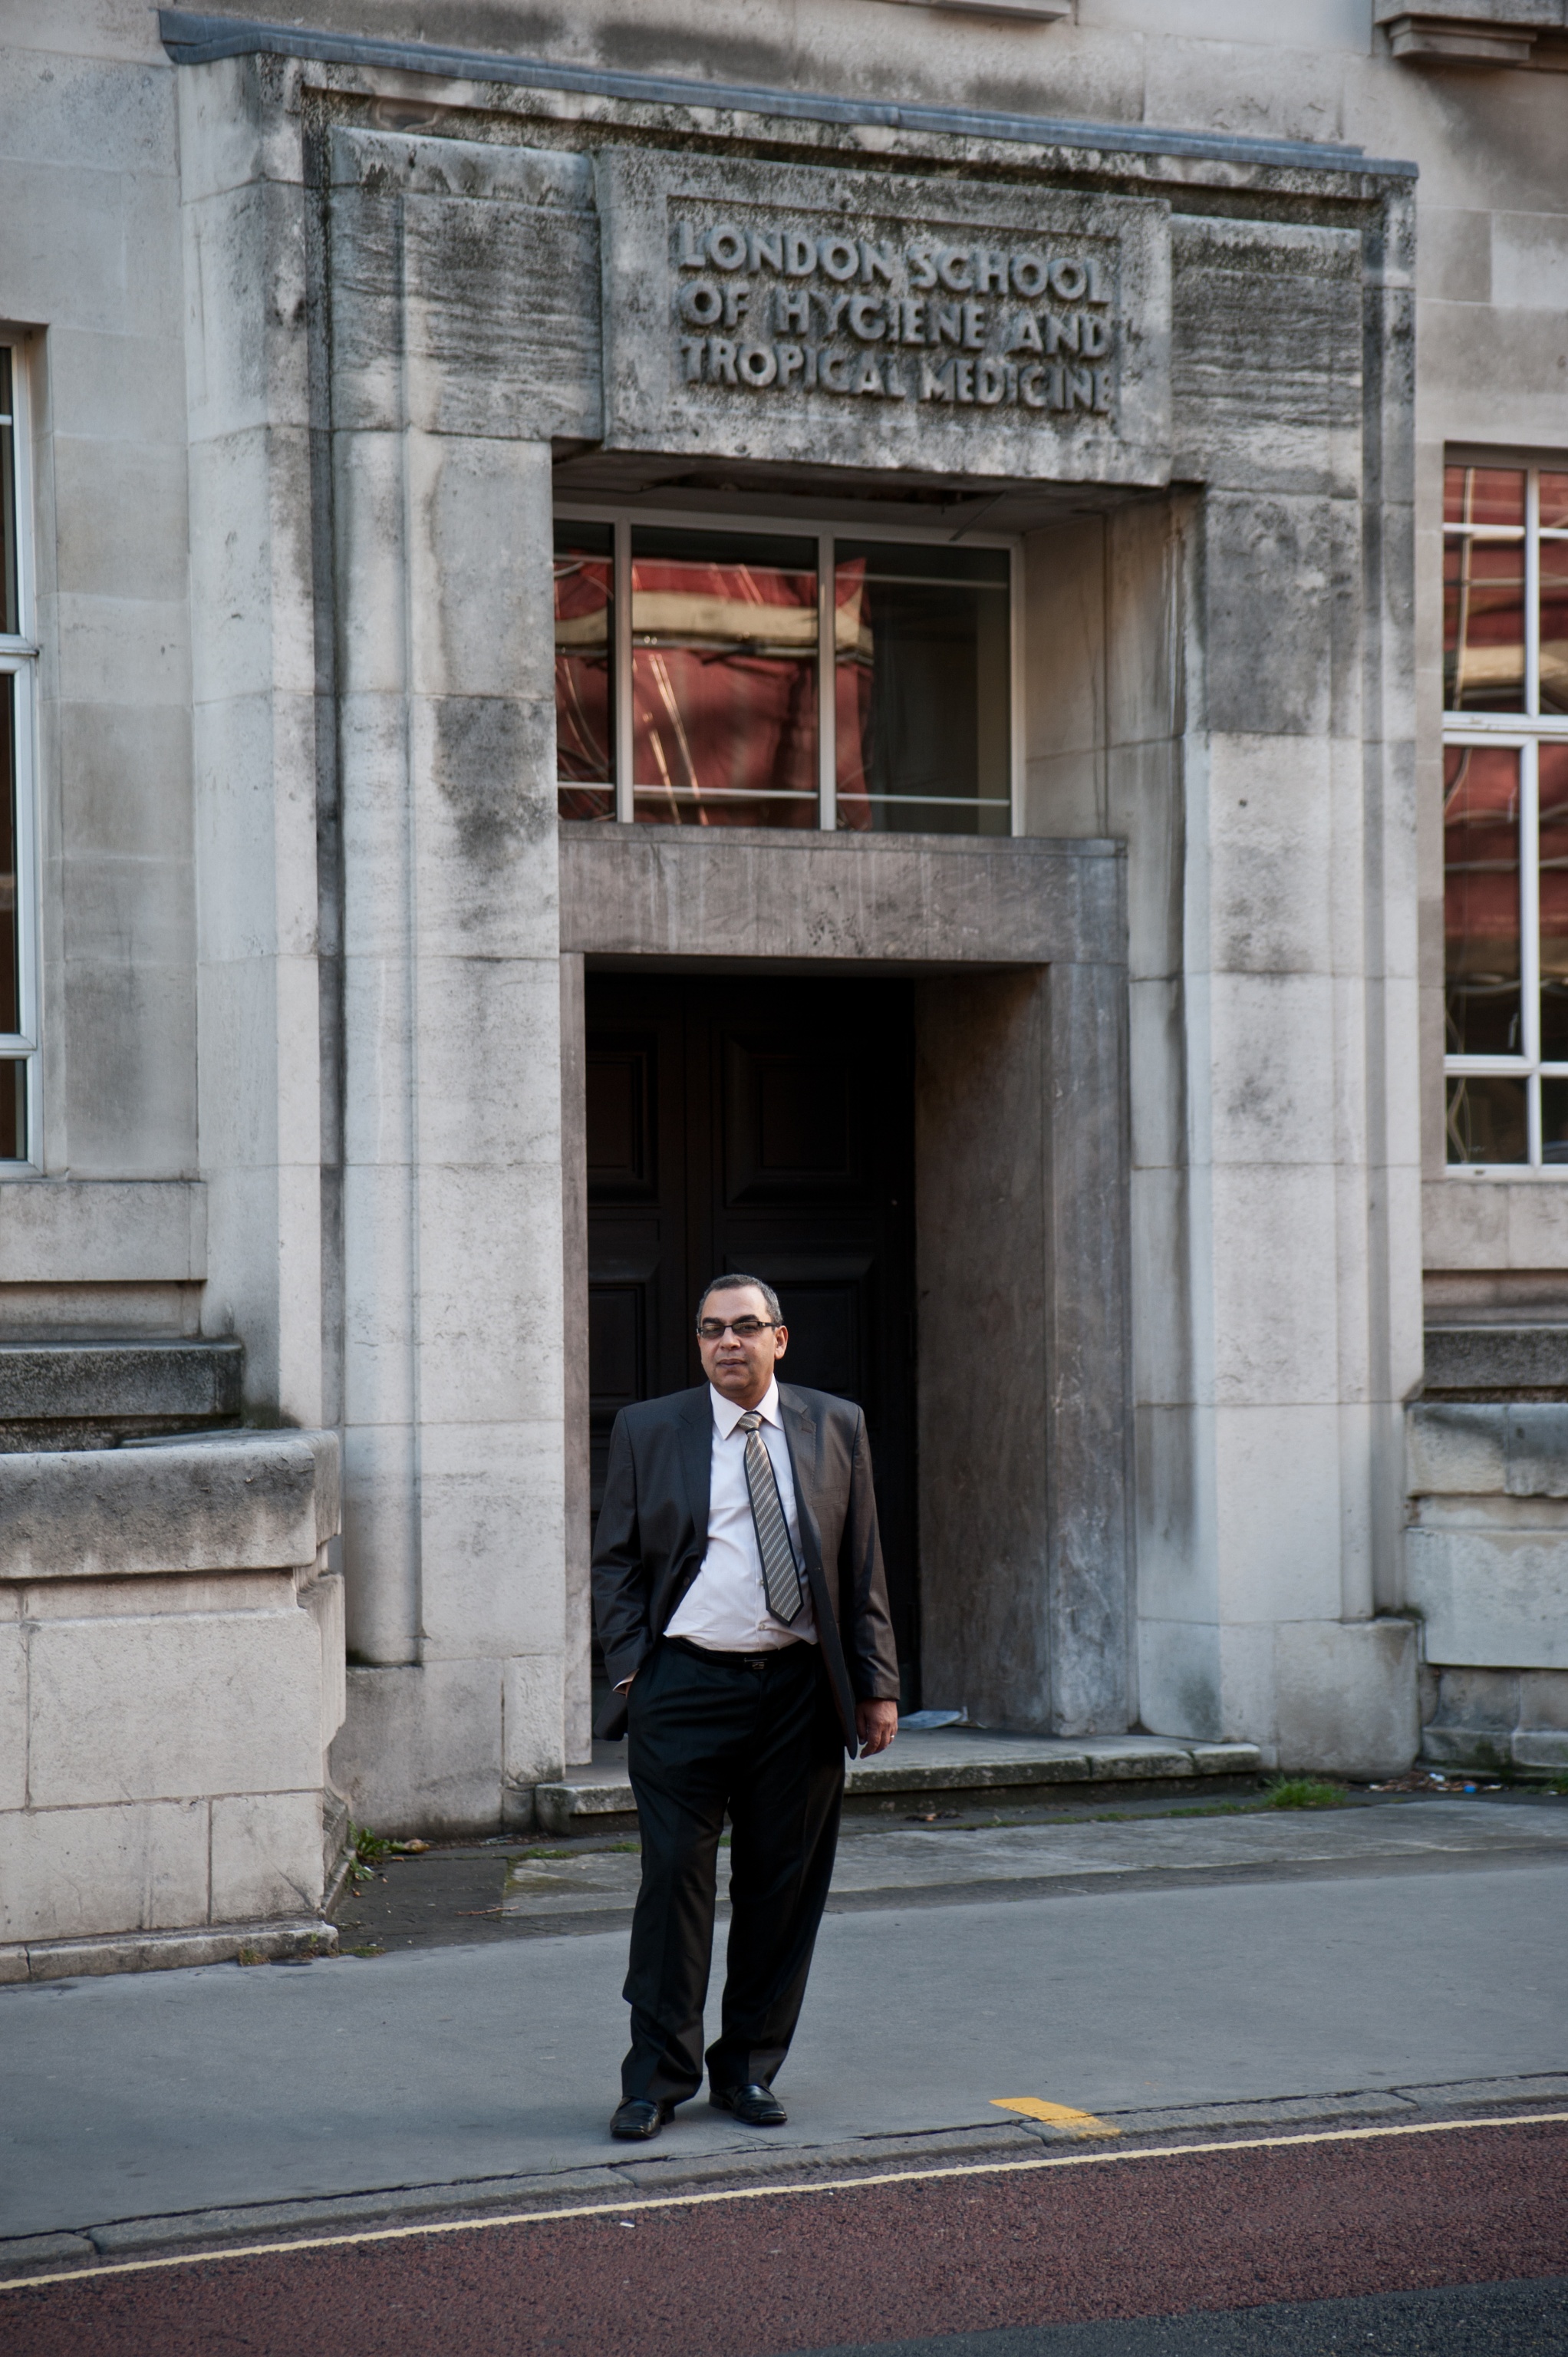 أحمد خالد توفيق أمام مدرسة لندن للصحة والطب